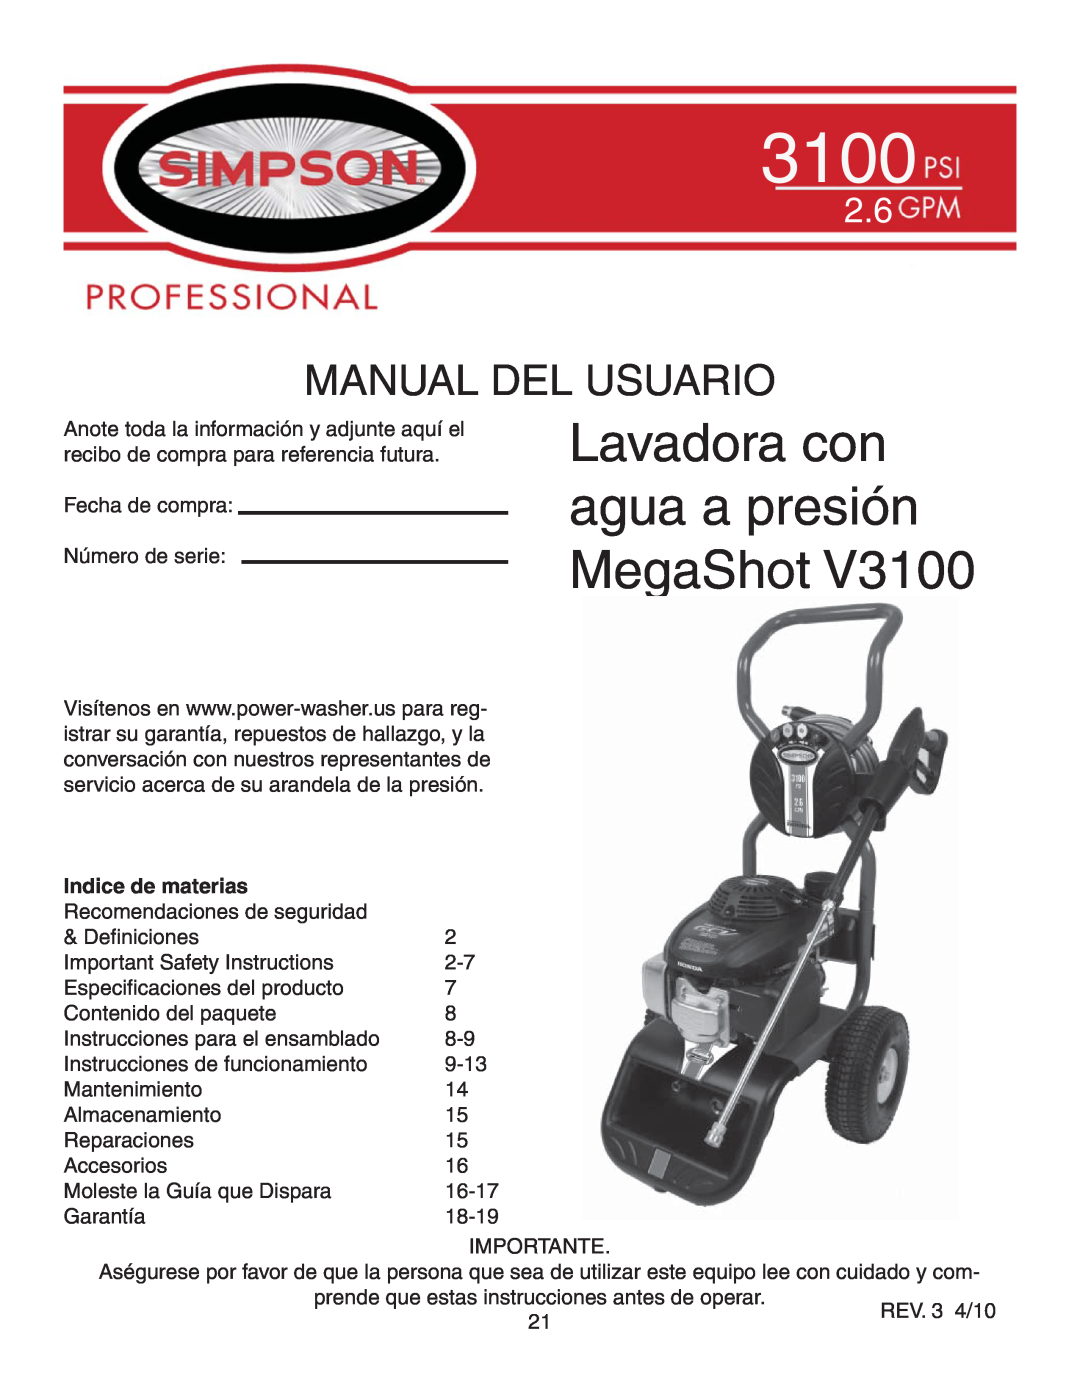 Simpson V3100 warranty Lavadora con agua a presión MegaShot, Manual Del Usuario, Indice de materias 